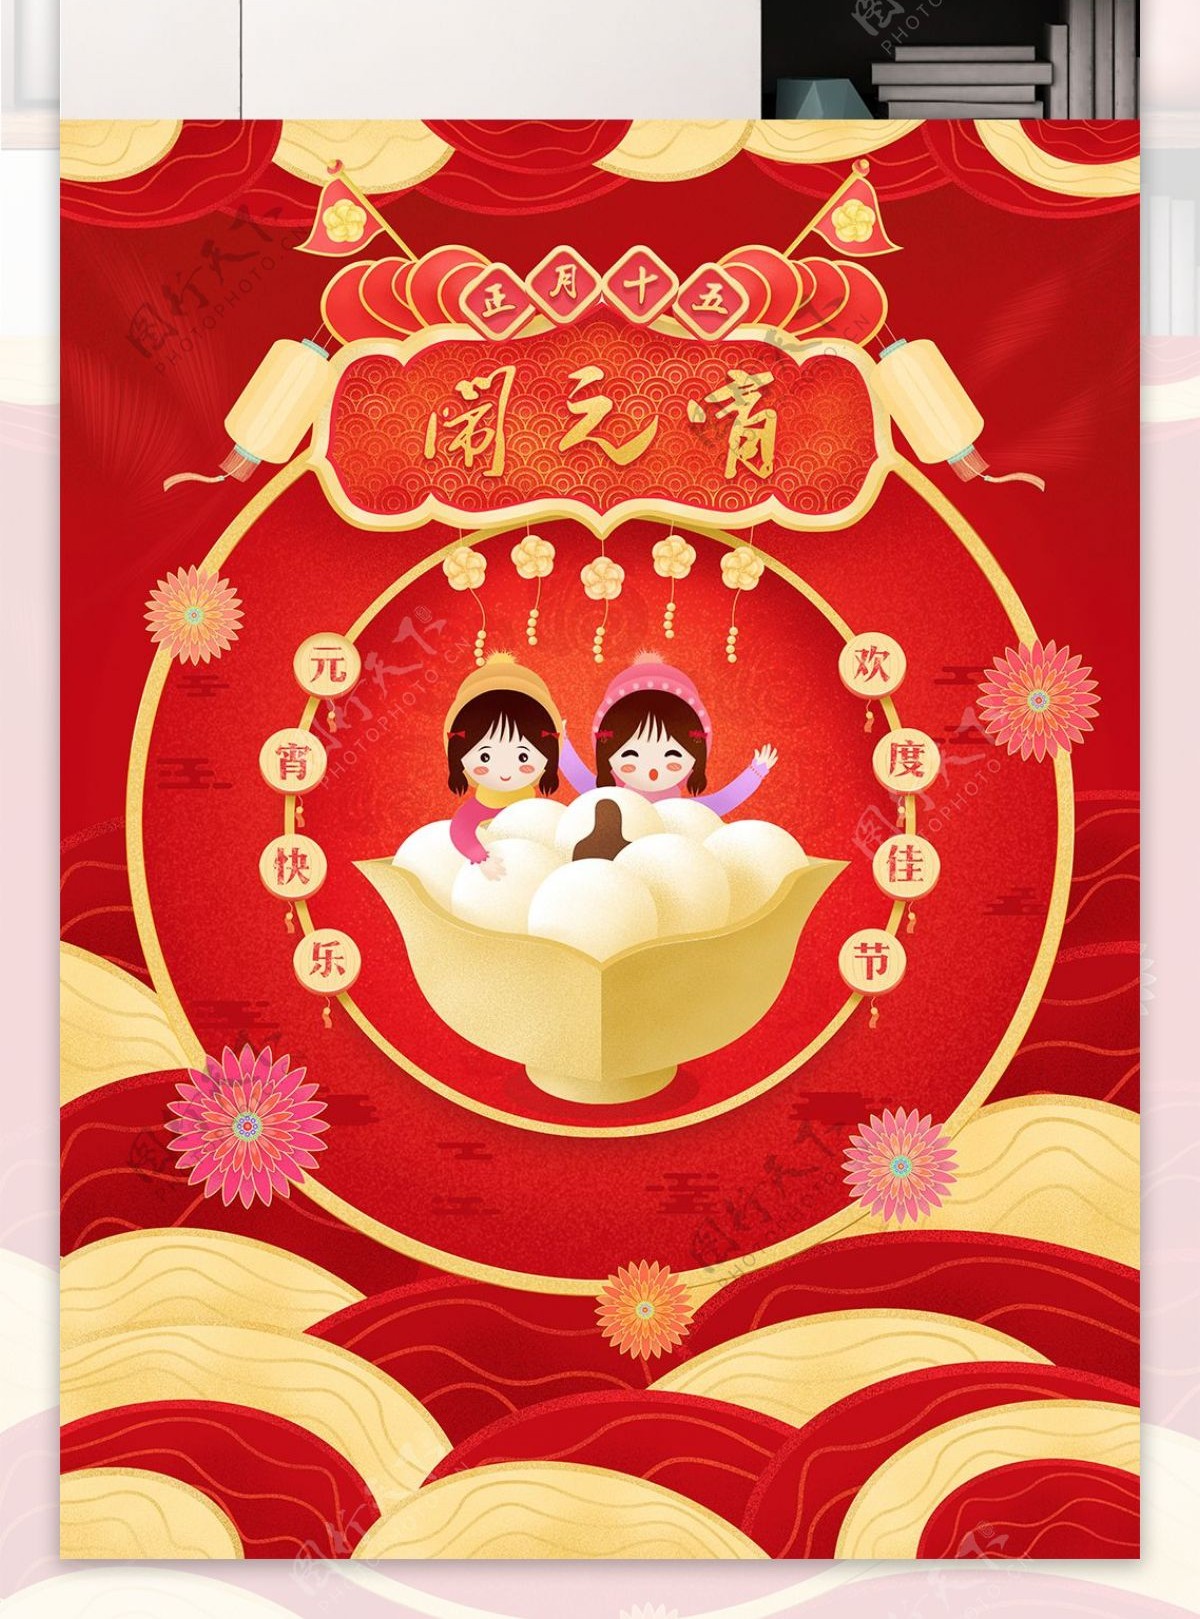 原创红色喜庆正月十五元宵节插画海报